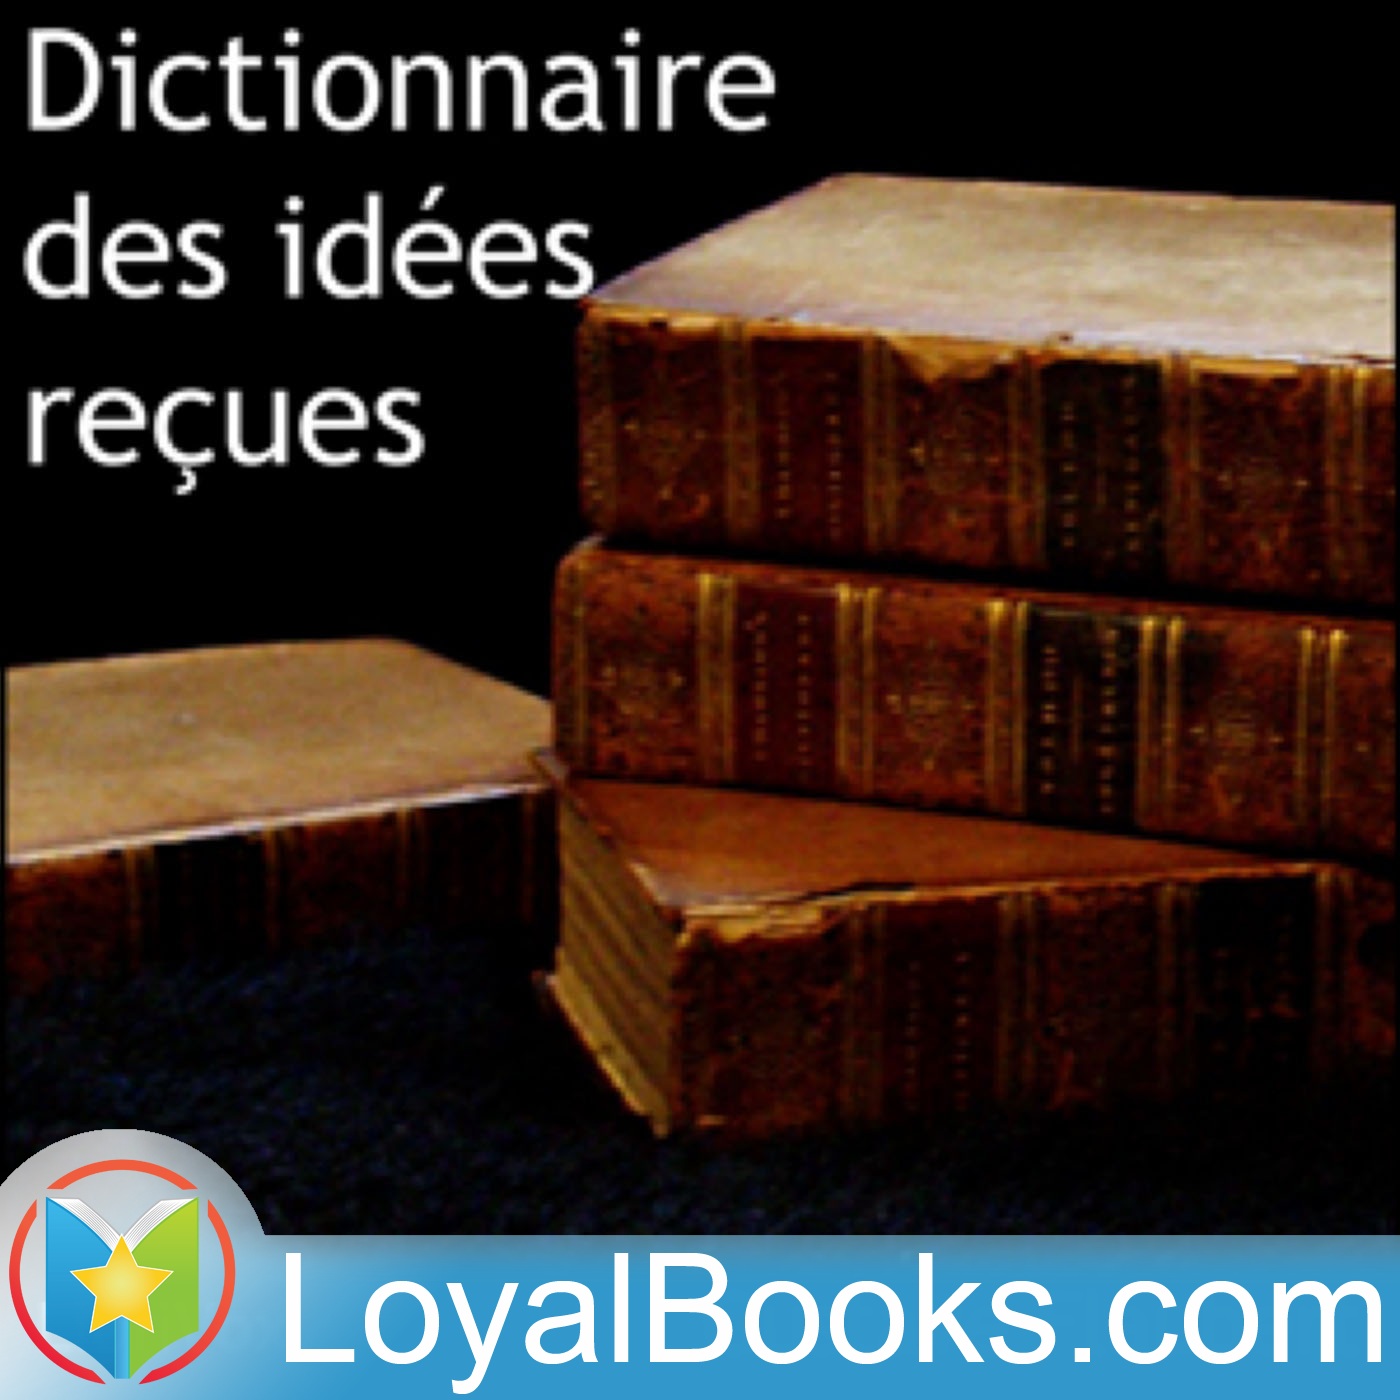 Dictionnaire des idées reçues by Gustave Flaubert